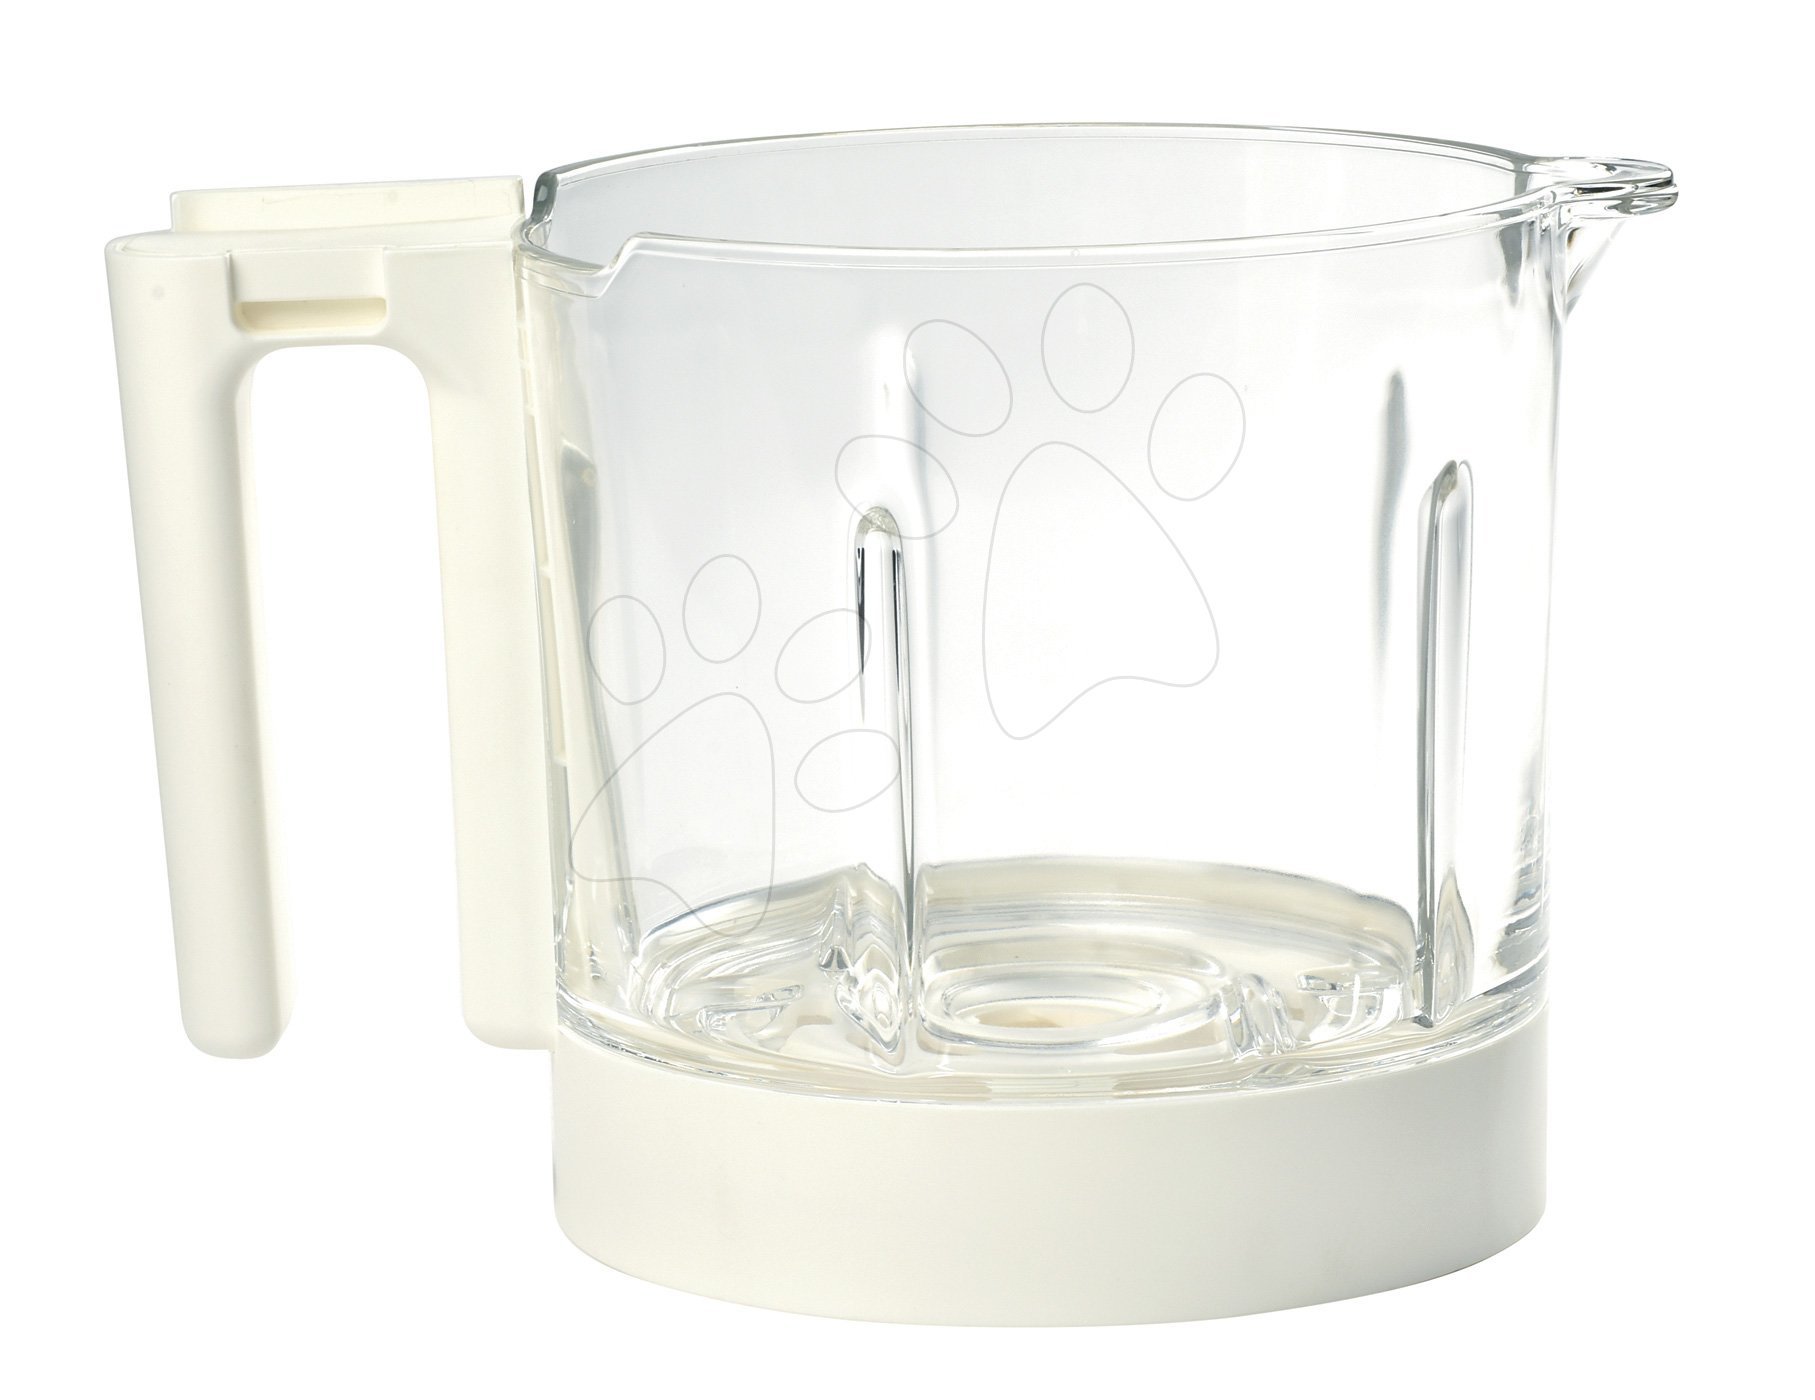 Aparat de gătit pe aburi cu mixer - Vas din sticlă pentru aparatul de gătit Babycook® Neo glass bowl Beaba alb din sticlă de înaltă calitate